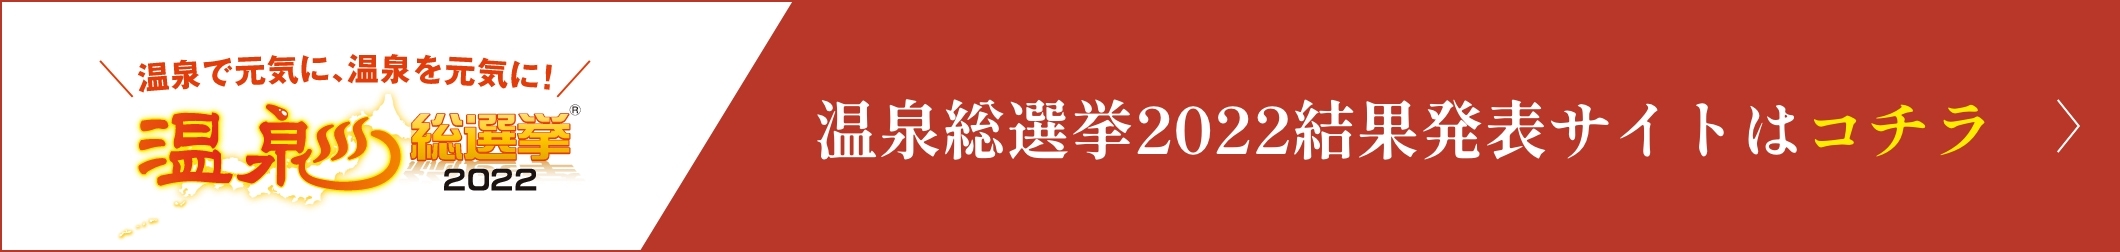 温泉総選挙2022結果発表サイトはコチラ